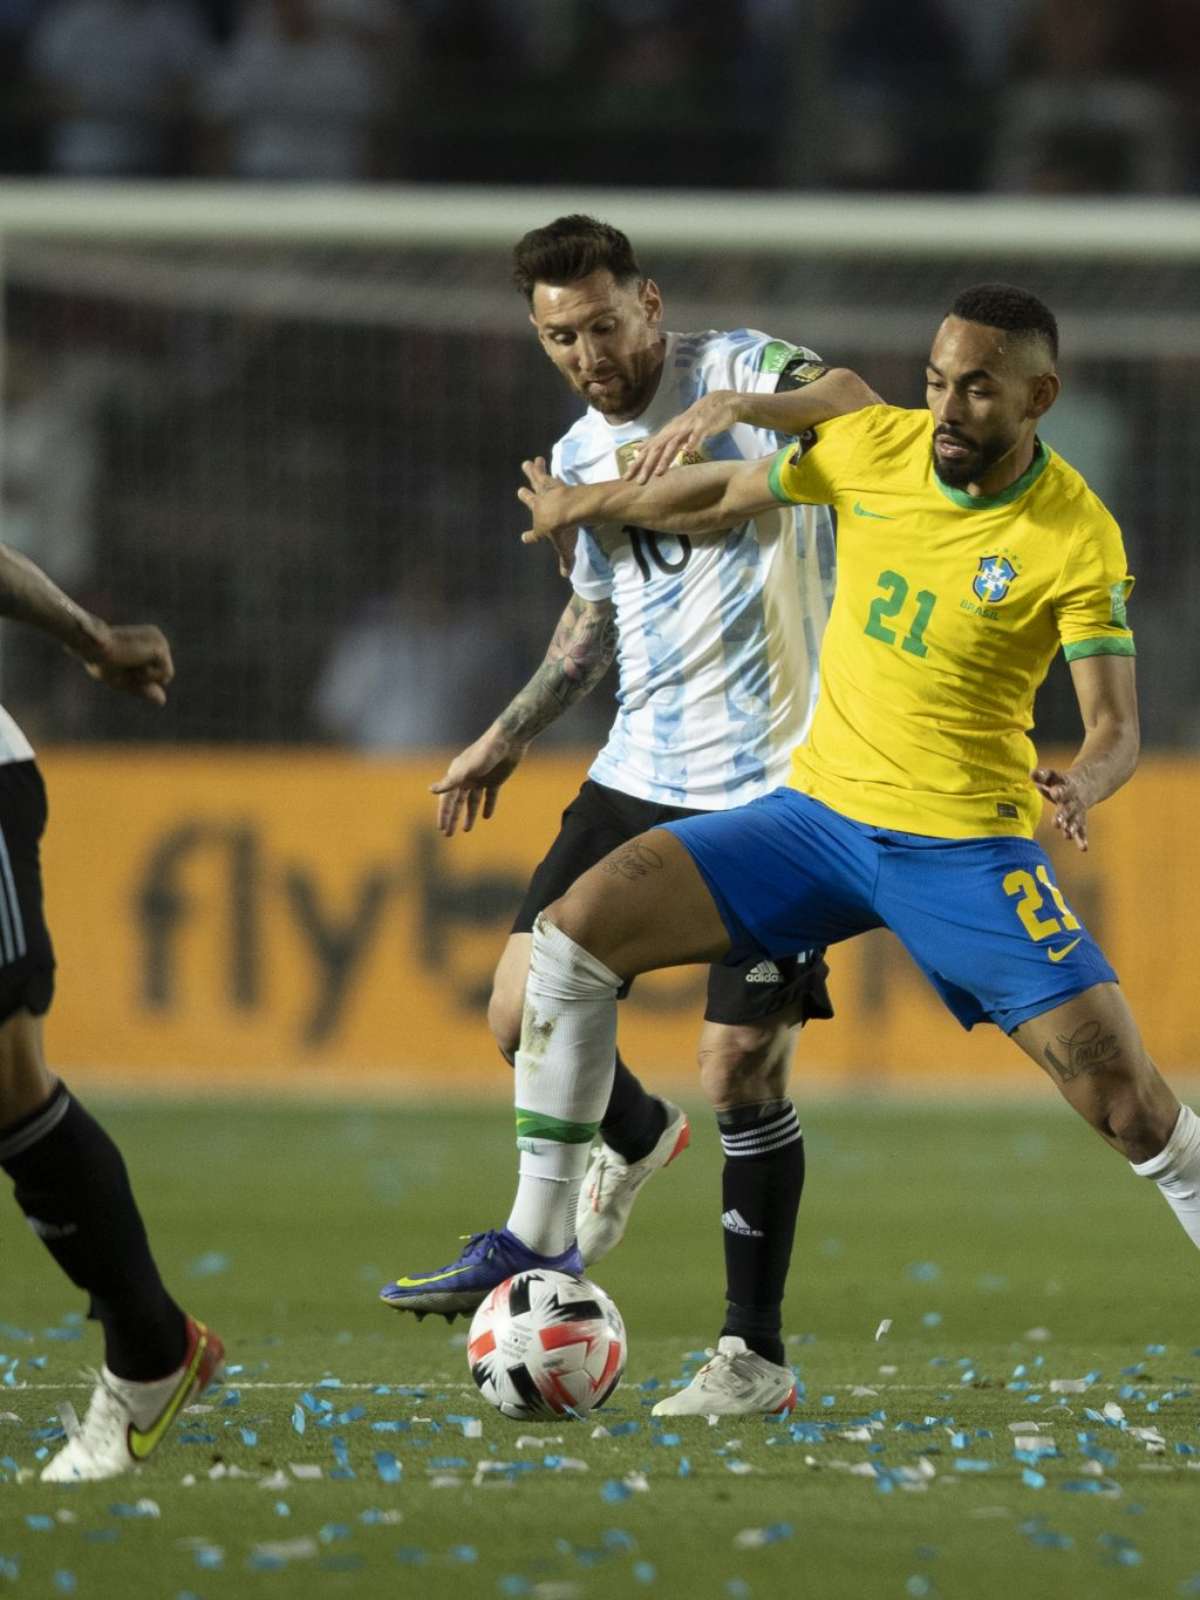 Rede Globo > esportes - Futebol: Globo transmite partida entre Brasil e  Bolívia nesta quinta-feira, dia 6